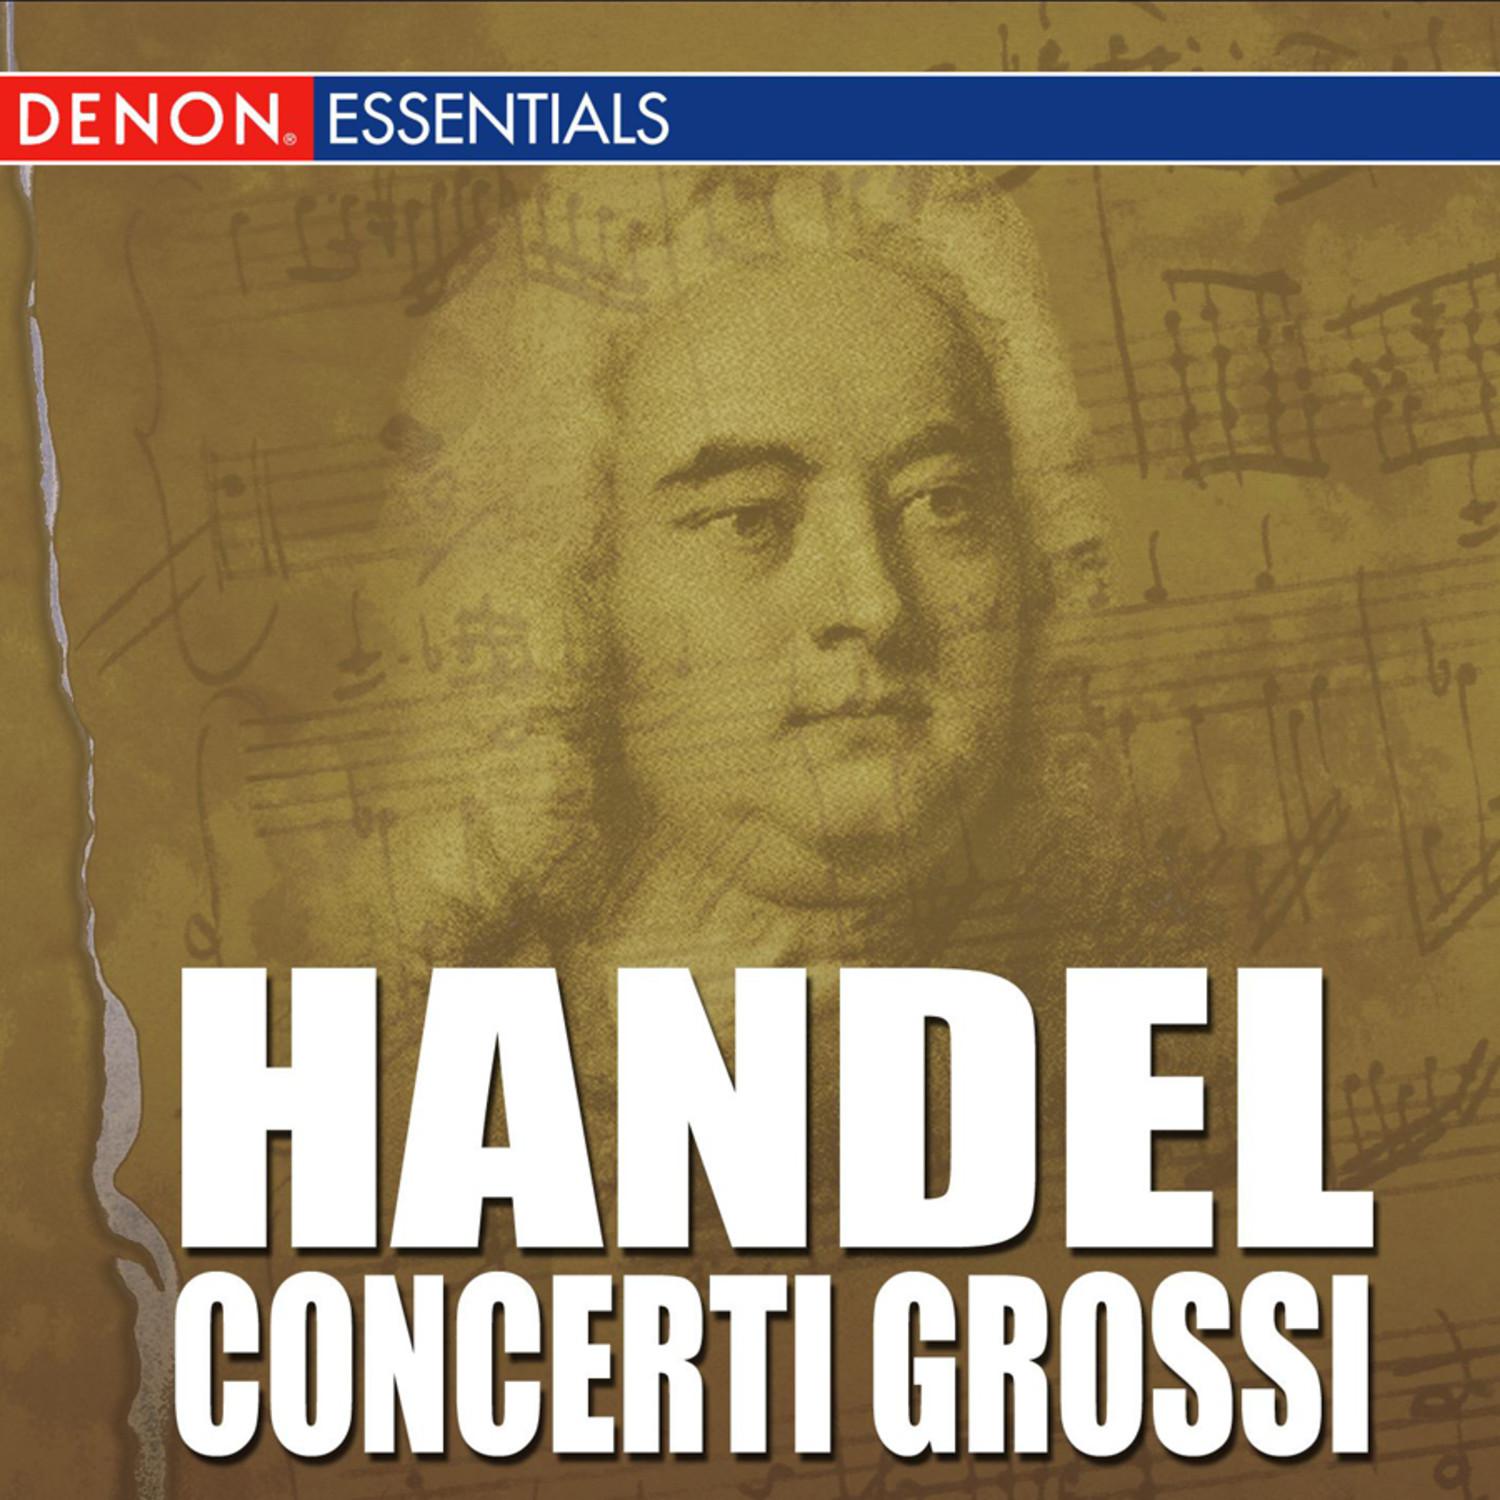 Concerto Grosso, Op. 6: No. 6 in G Minor, HWV 324: I. Larghetto e affettuoso